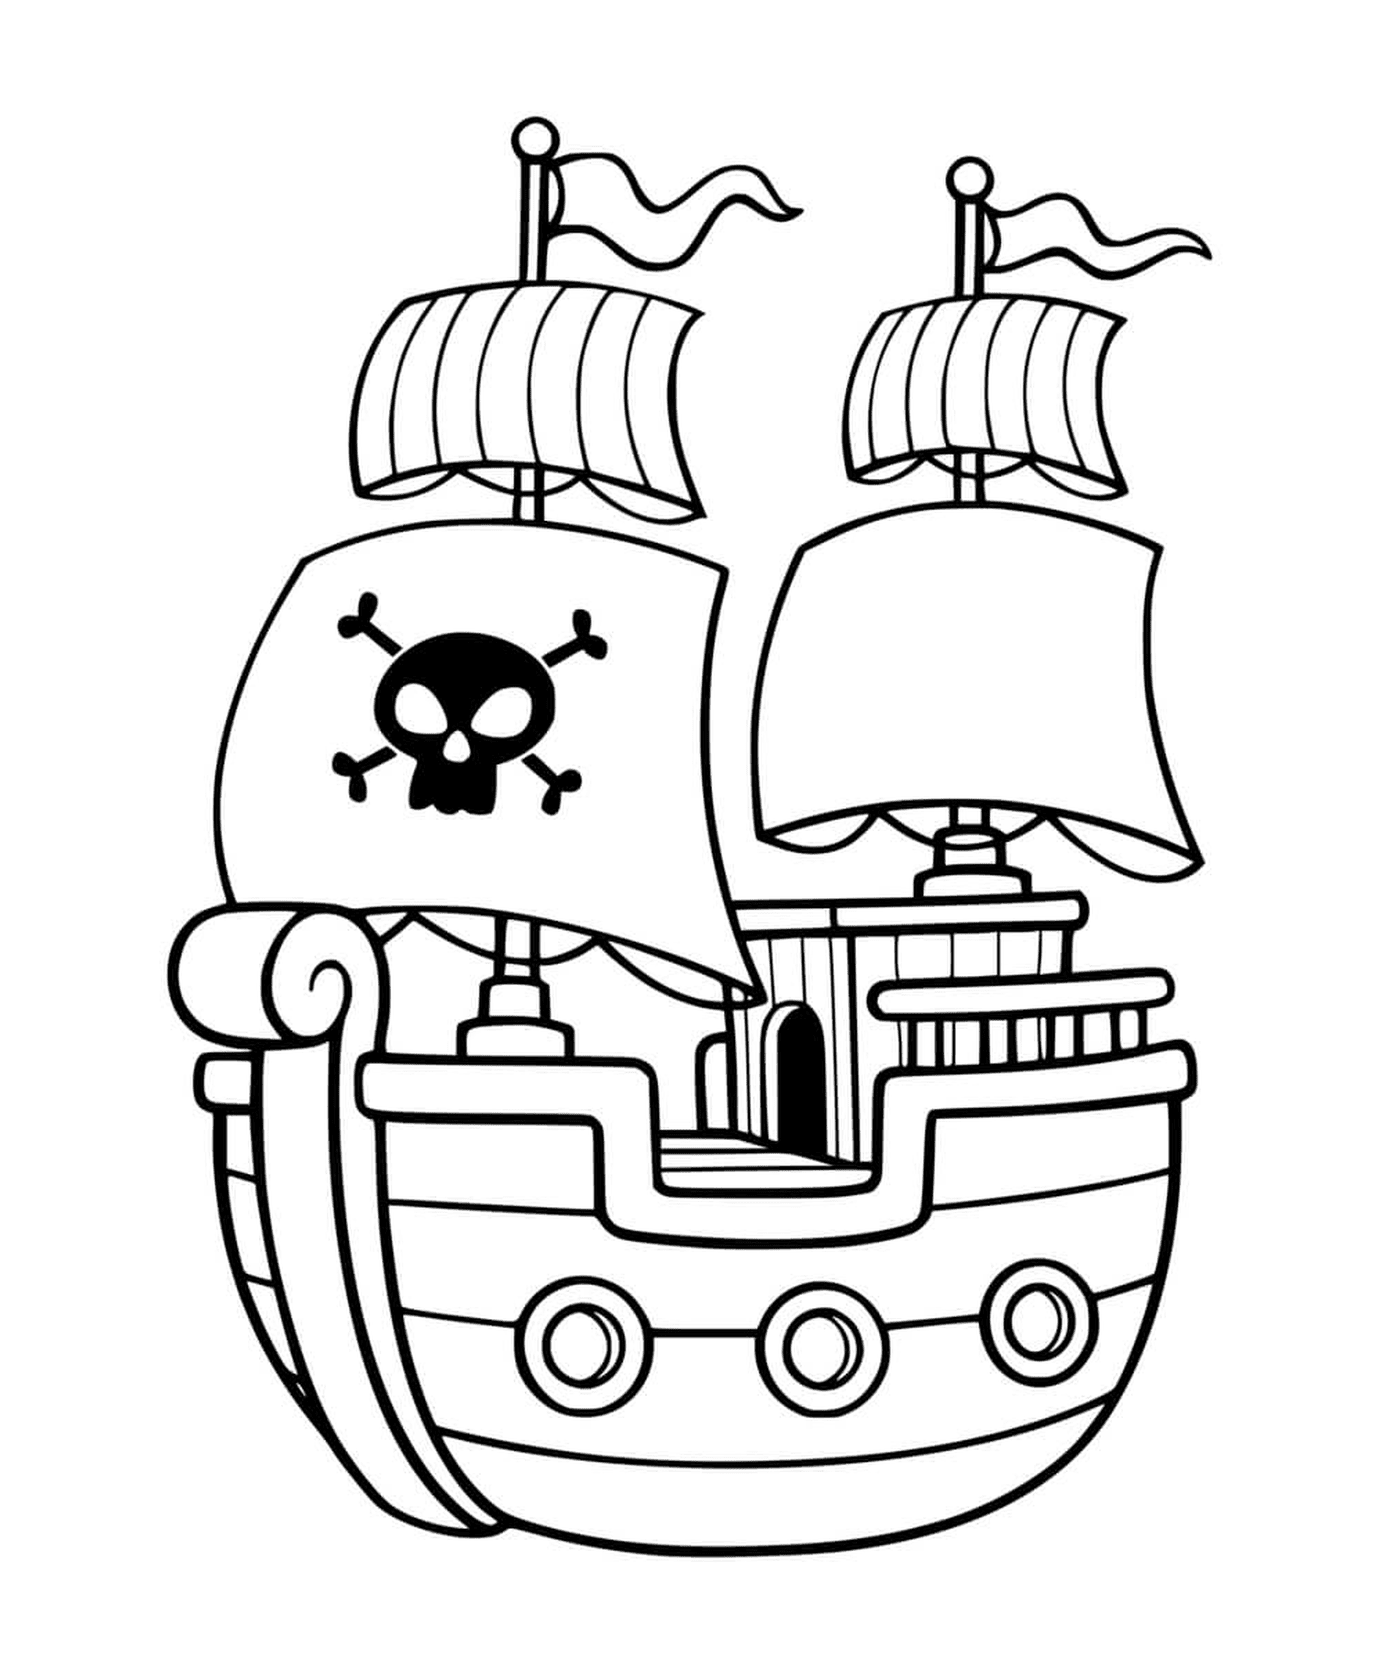  Пиратская лодка для детей 